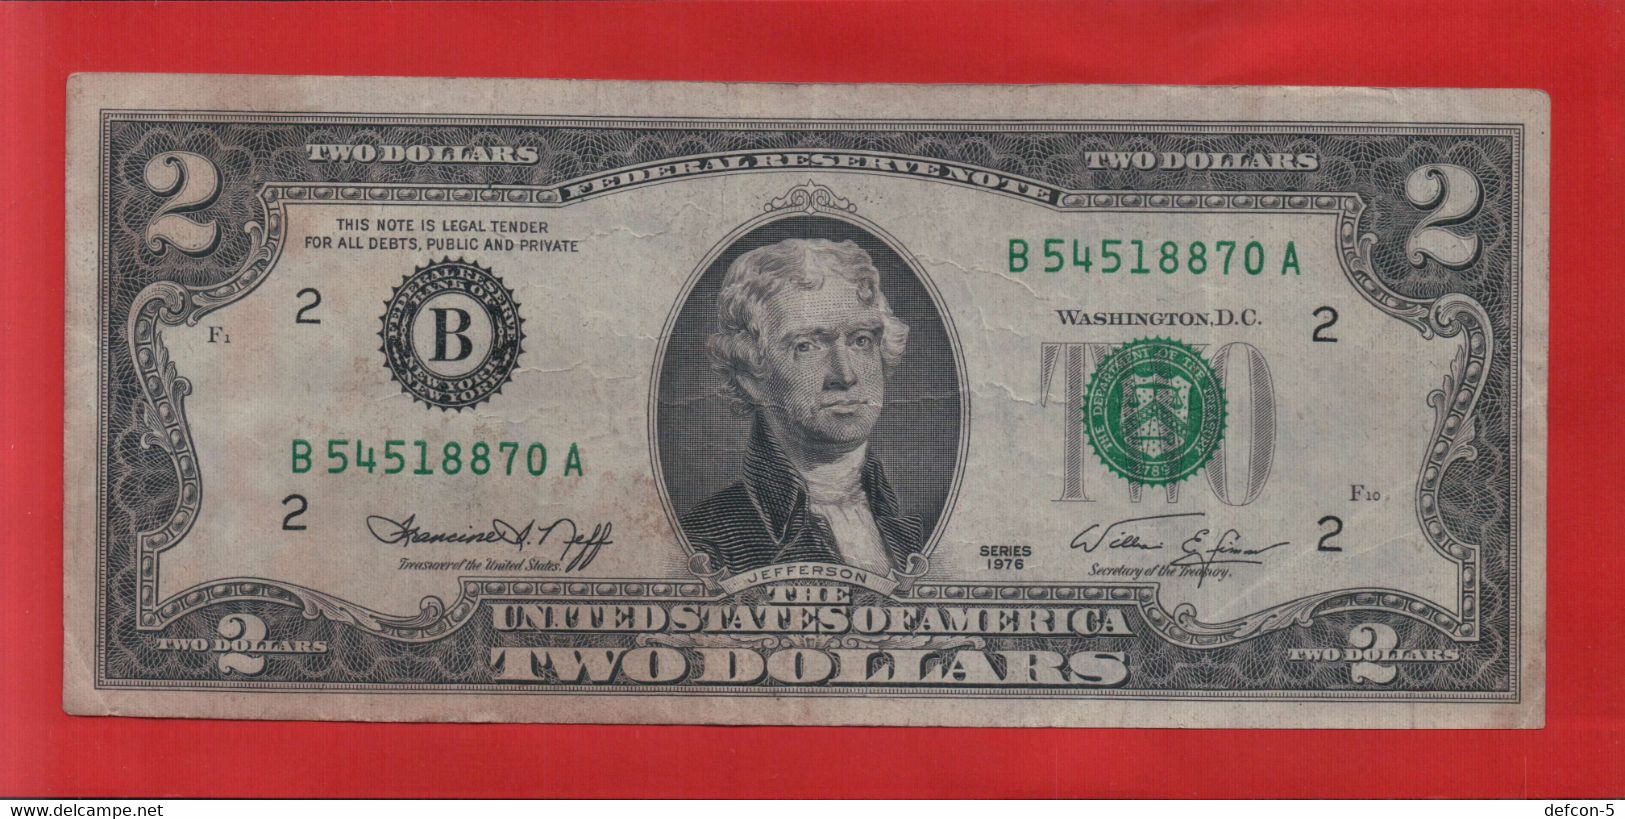 Rarität ! 2 US-Dollar [1976] > B 54518870 A < {$018-002} - Valuta Nazionale